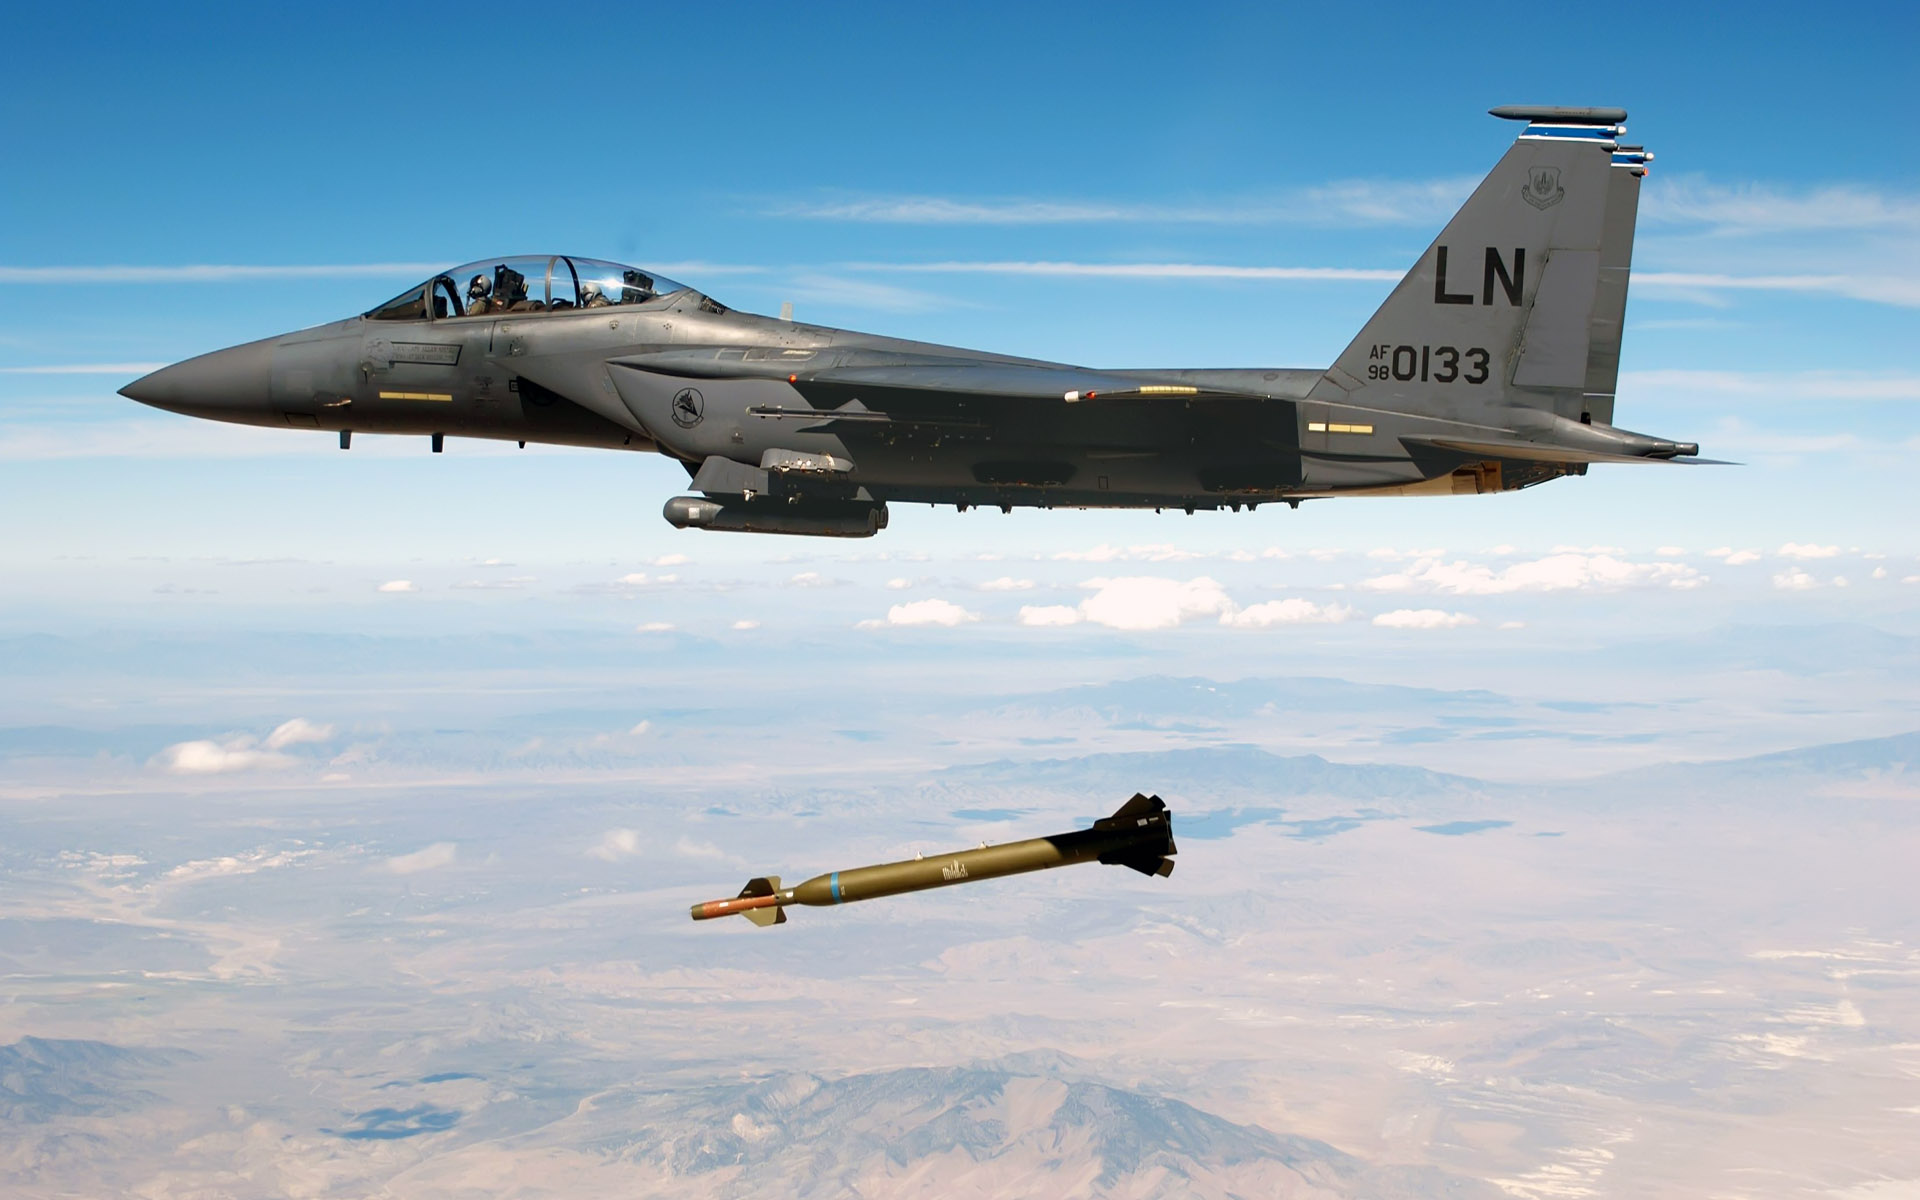 самолет, бомбы, военный, Турция, самолеты, транспортные средства, F-15 Eagle - обои на рабочий стол